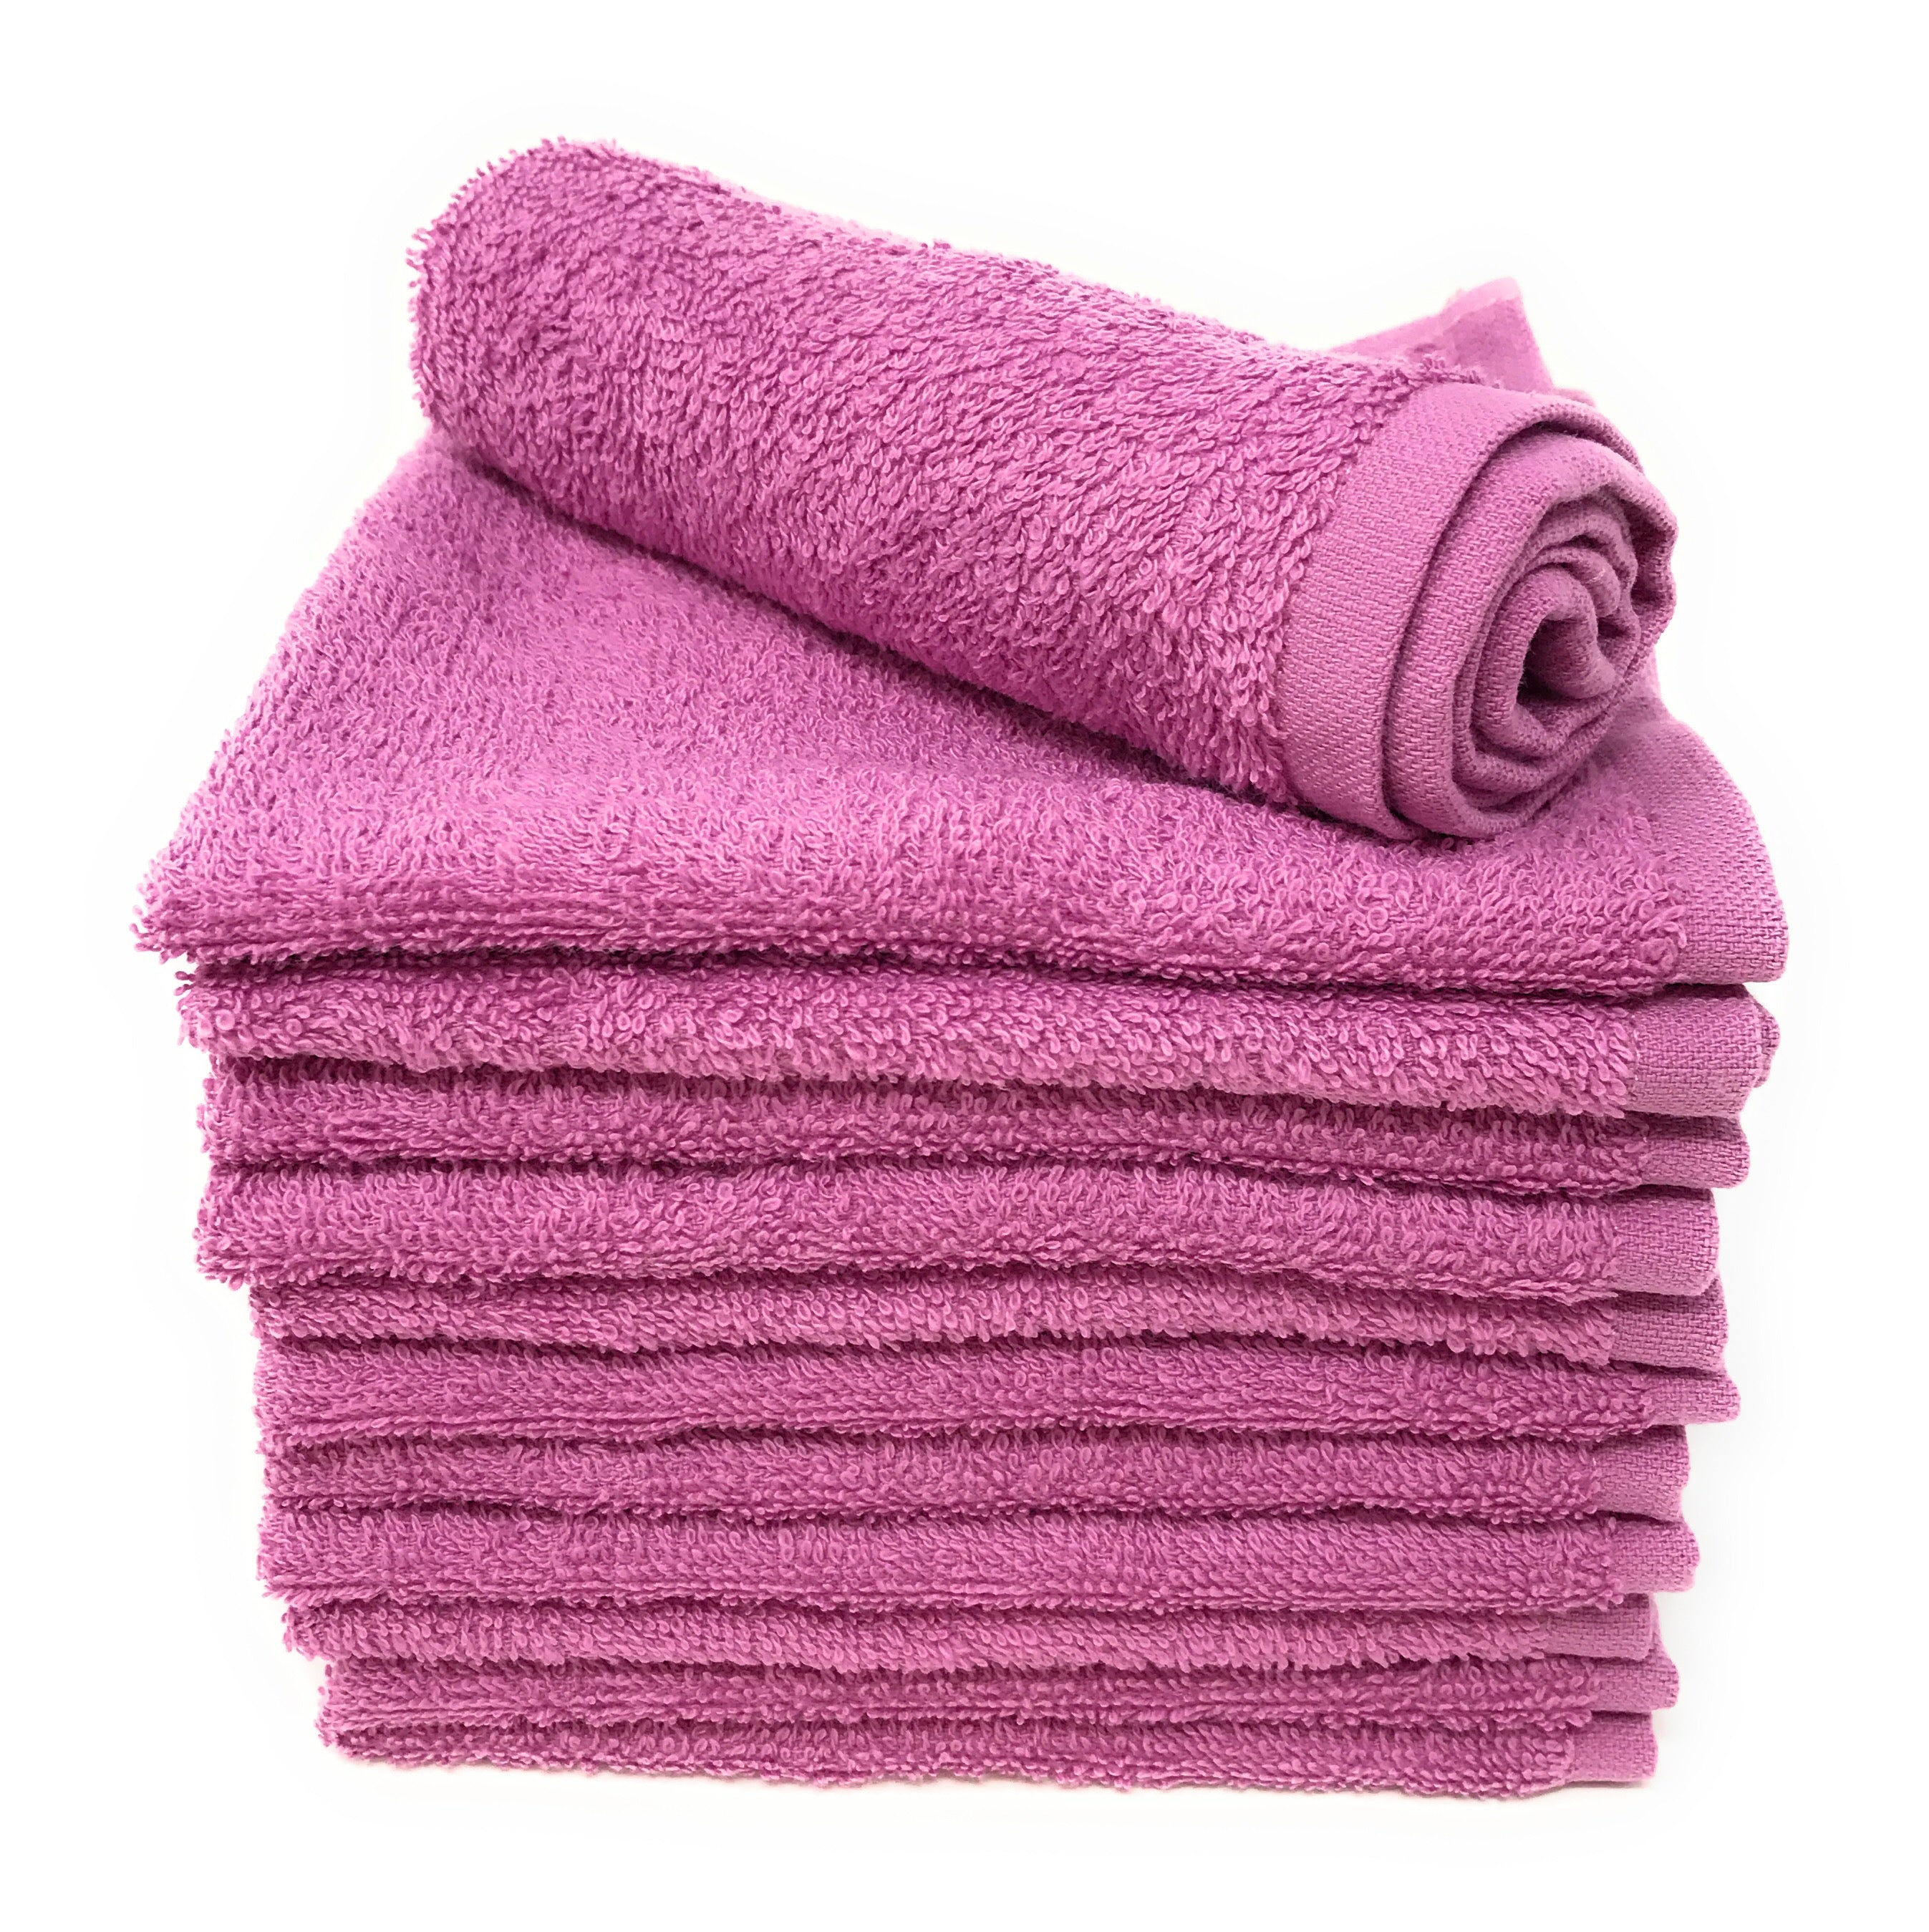 12X12 Wholesale White Cotton Washcloths - Towel Super Center